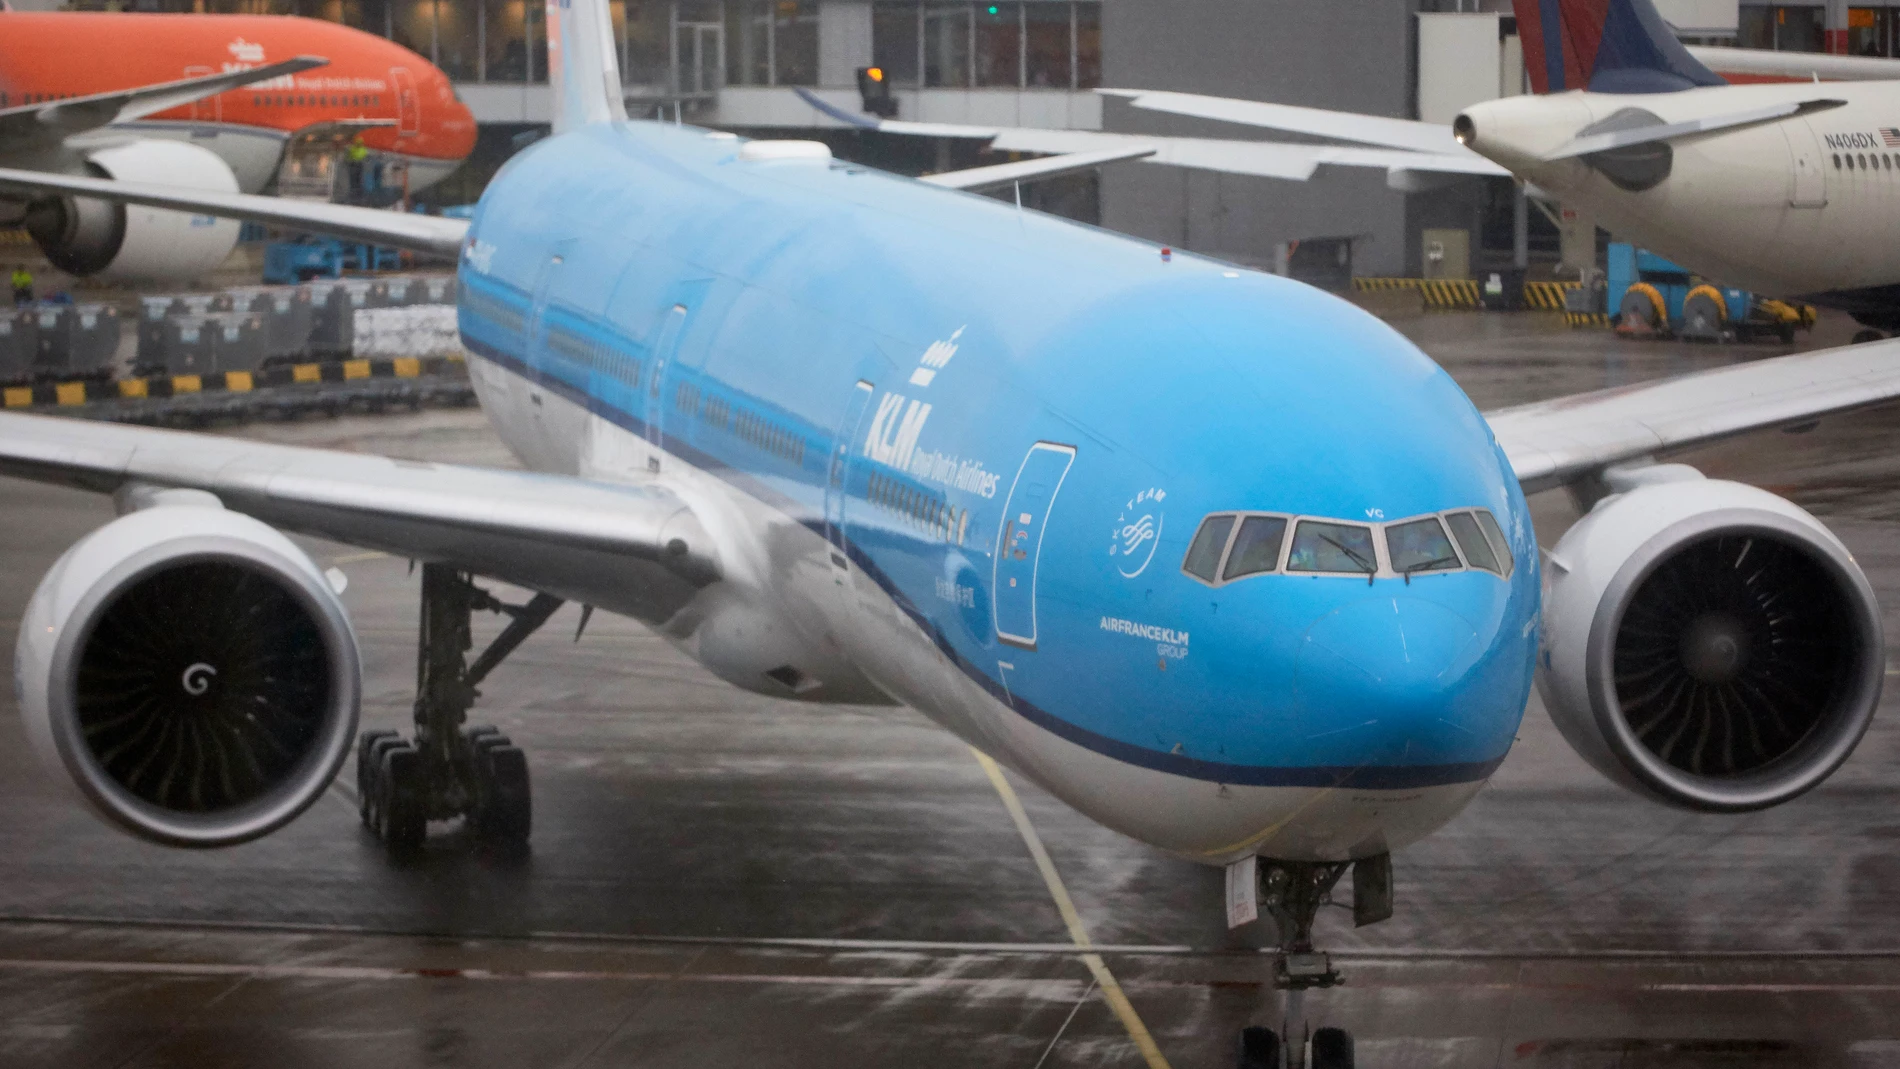 Encuentran a una persona escondida en el tren de aterrizaje de un avión que viajó de Sudáfrica a Ámsterdam